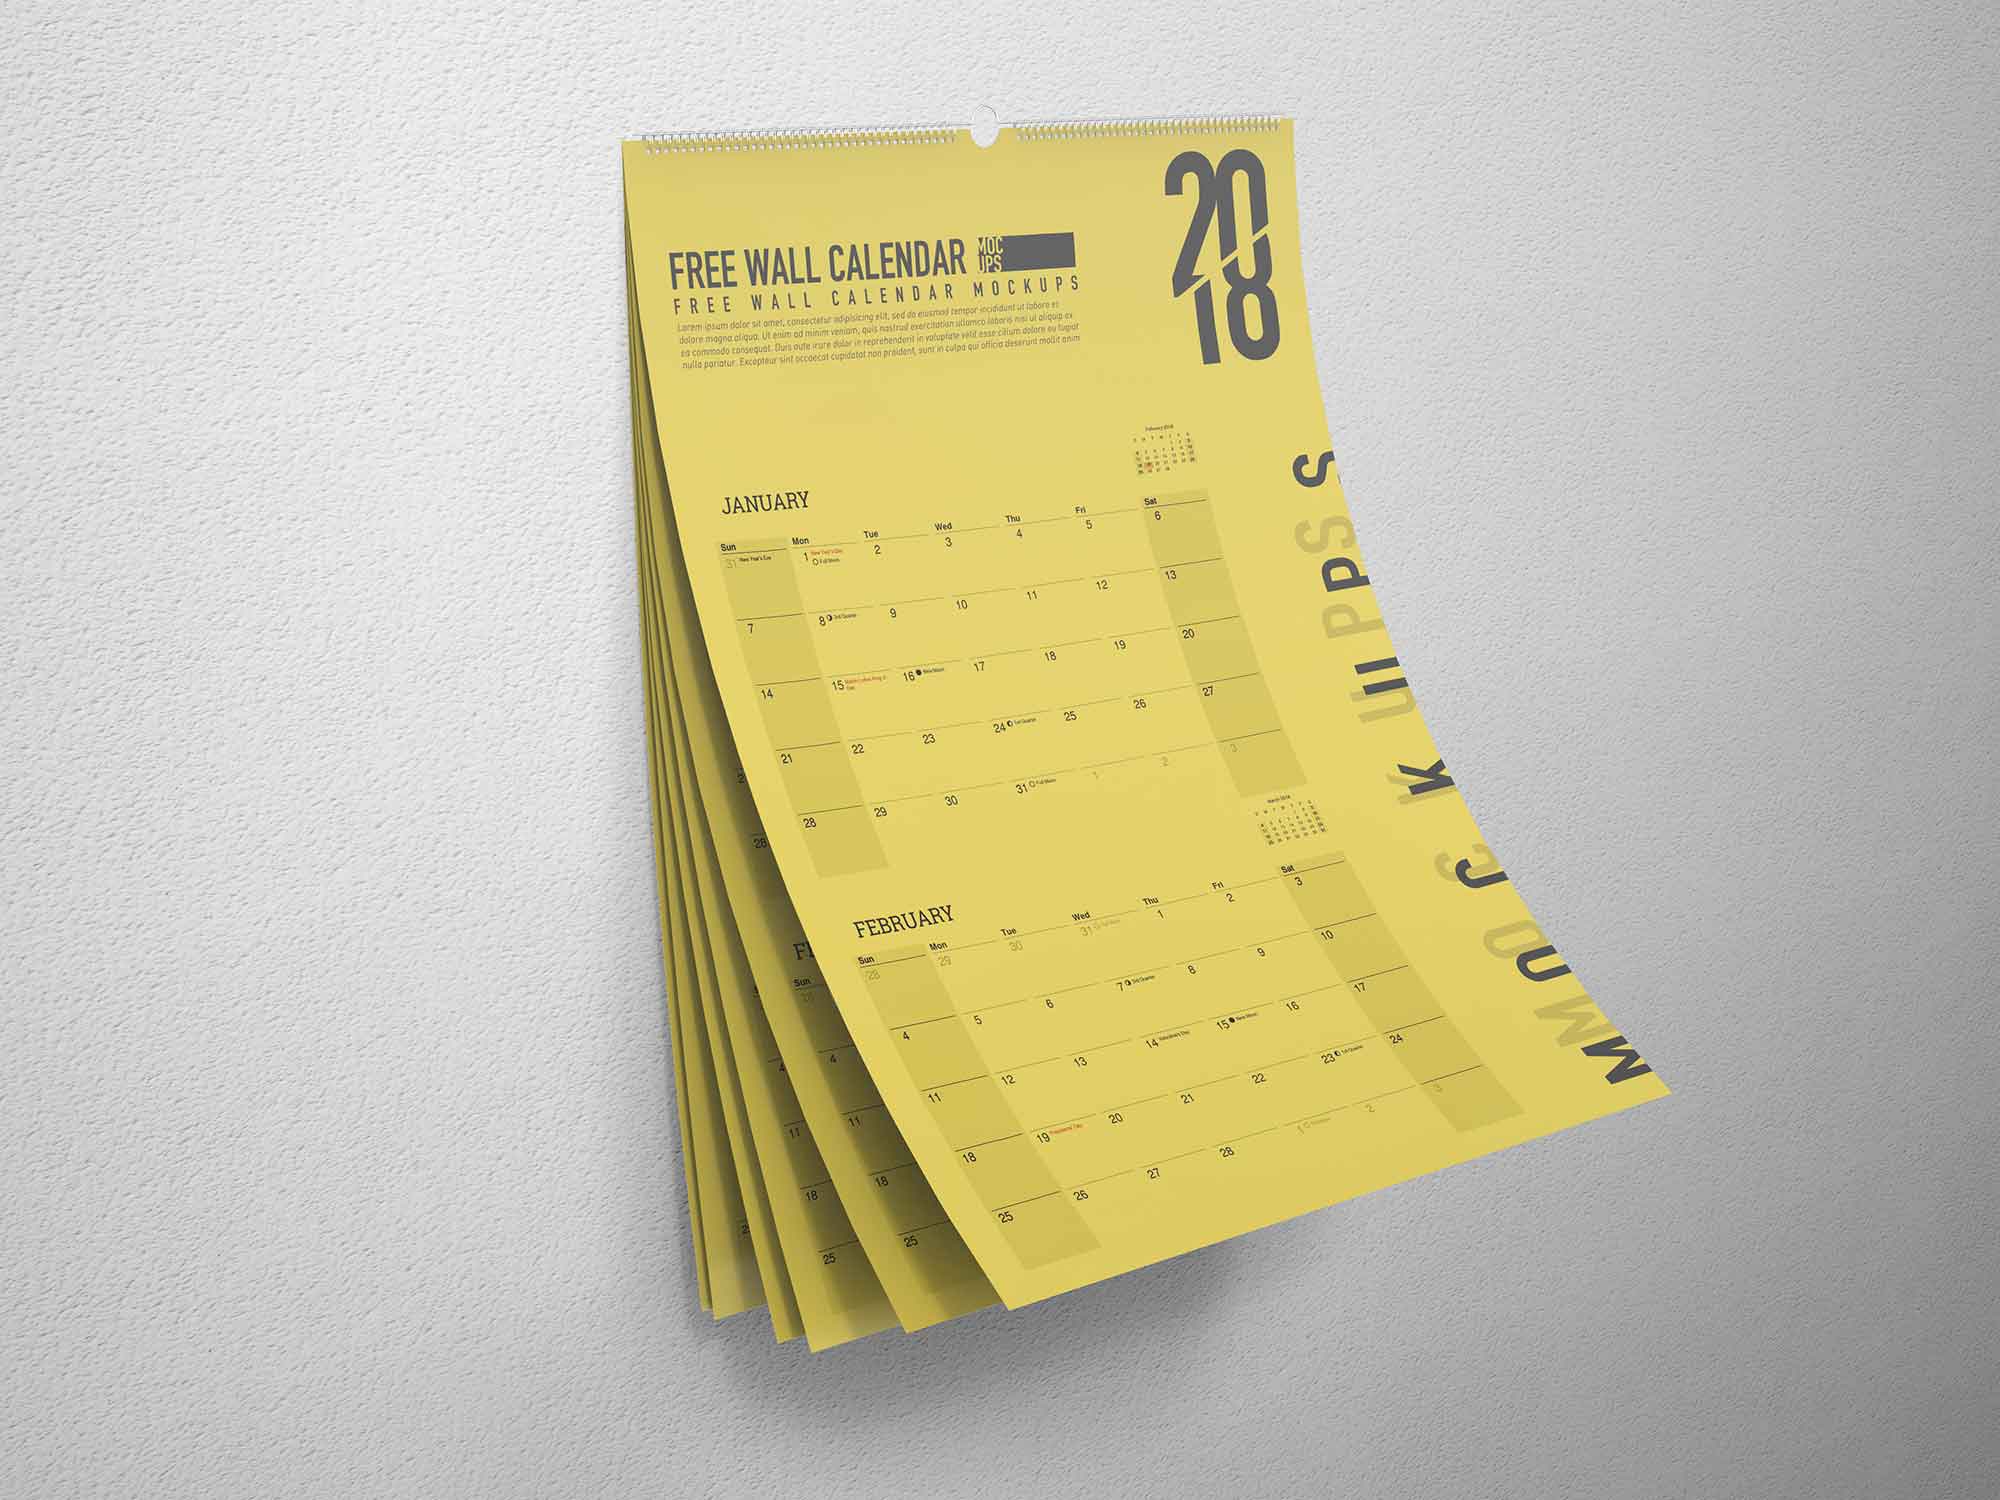 Maqueta de calendario de pared A3 gratis